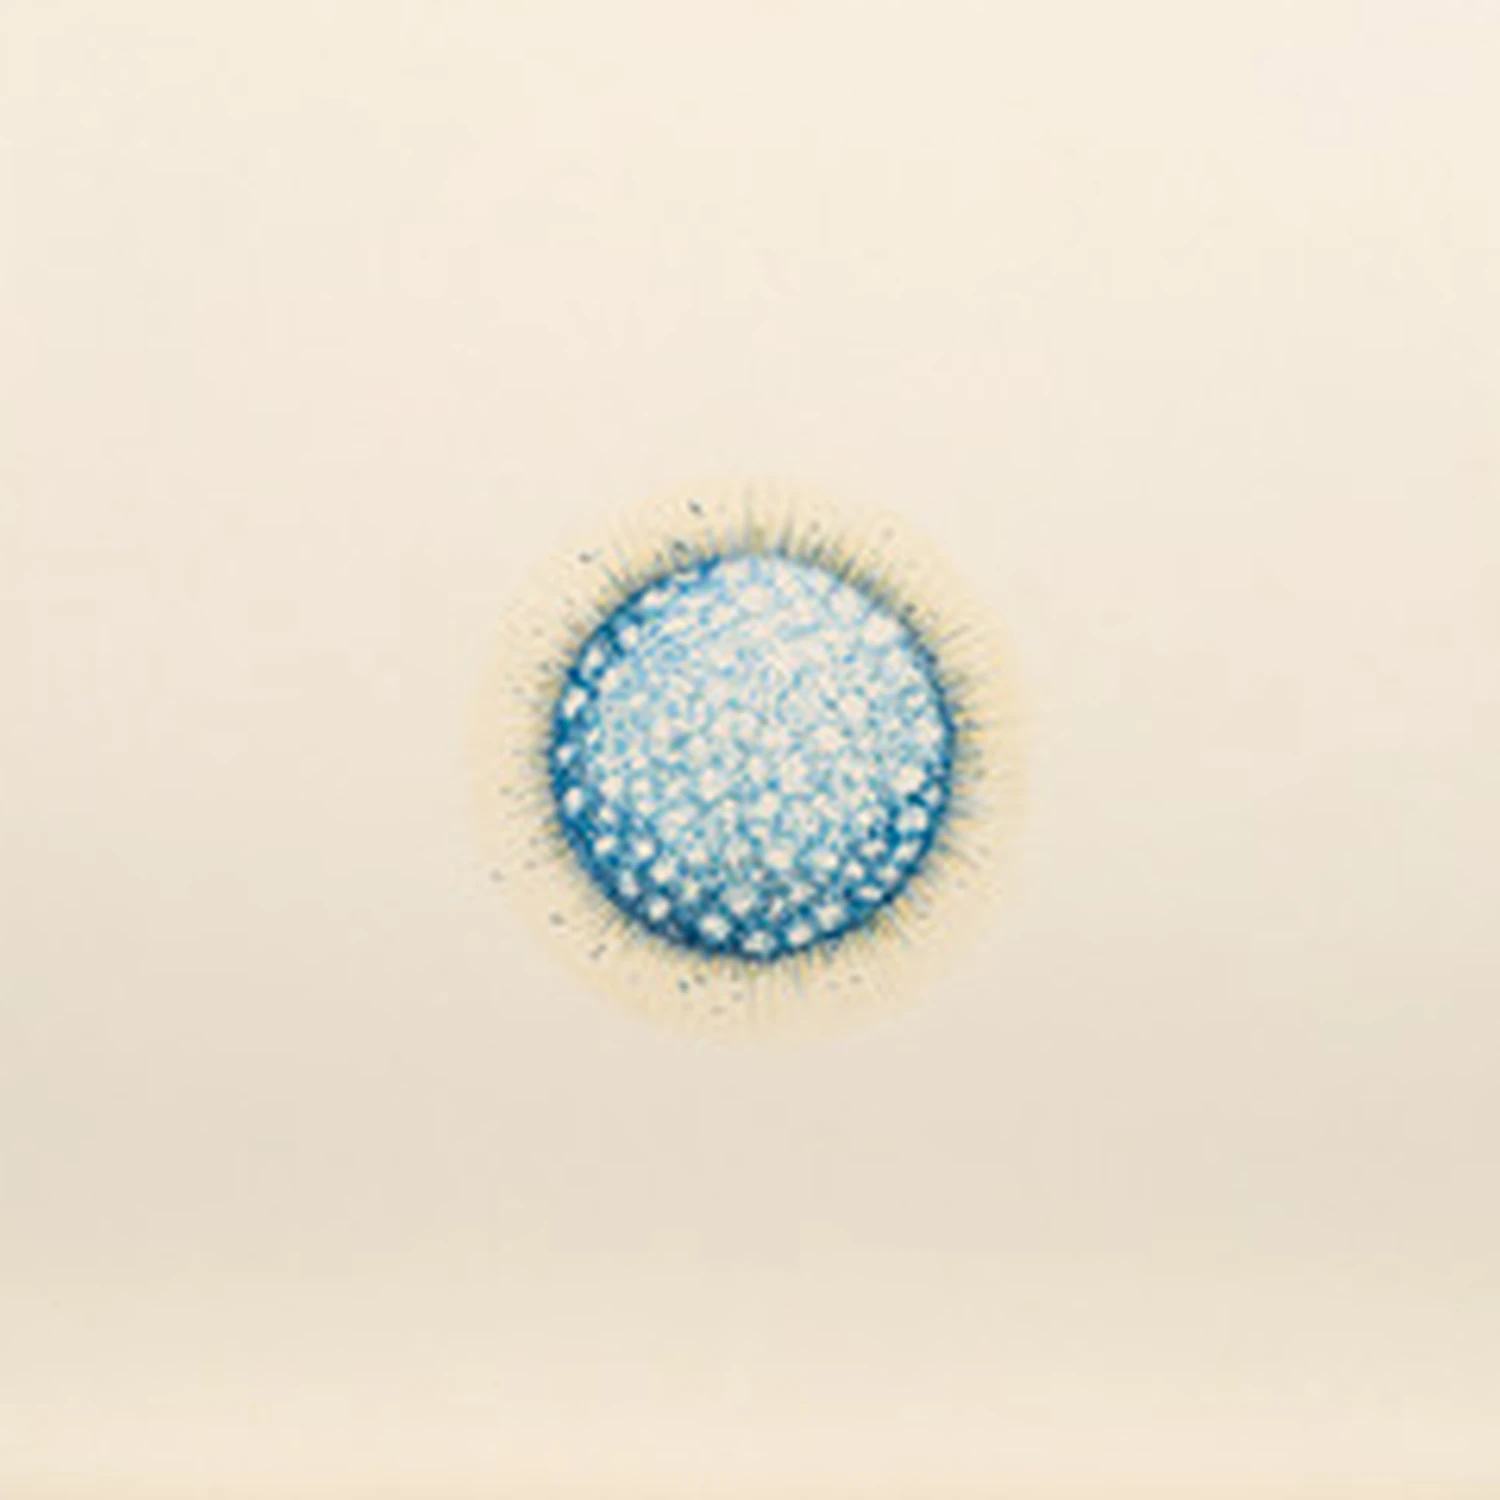 Diatomea blau 06, 2017, Buntstiftzeichnung, 20 x 20 cm